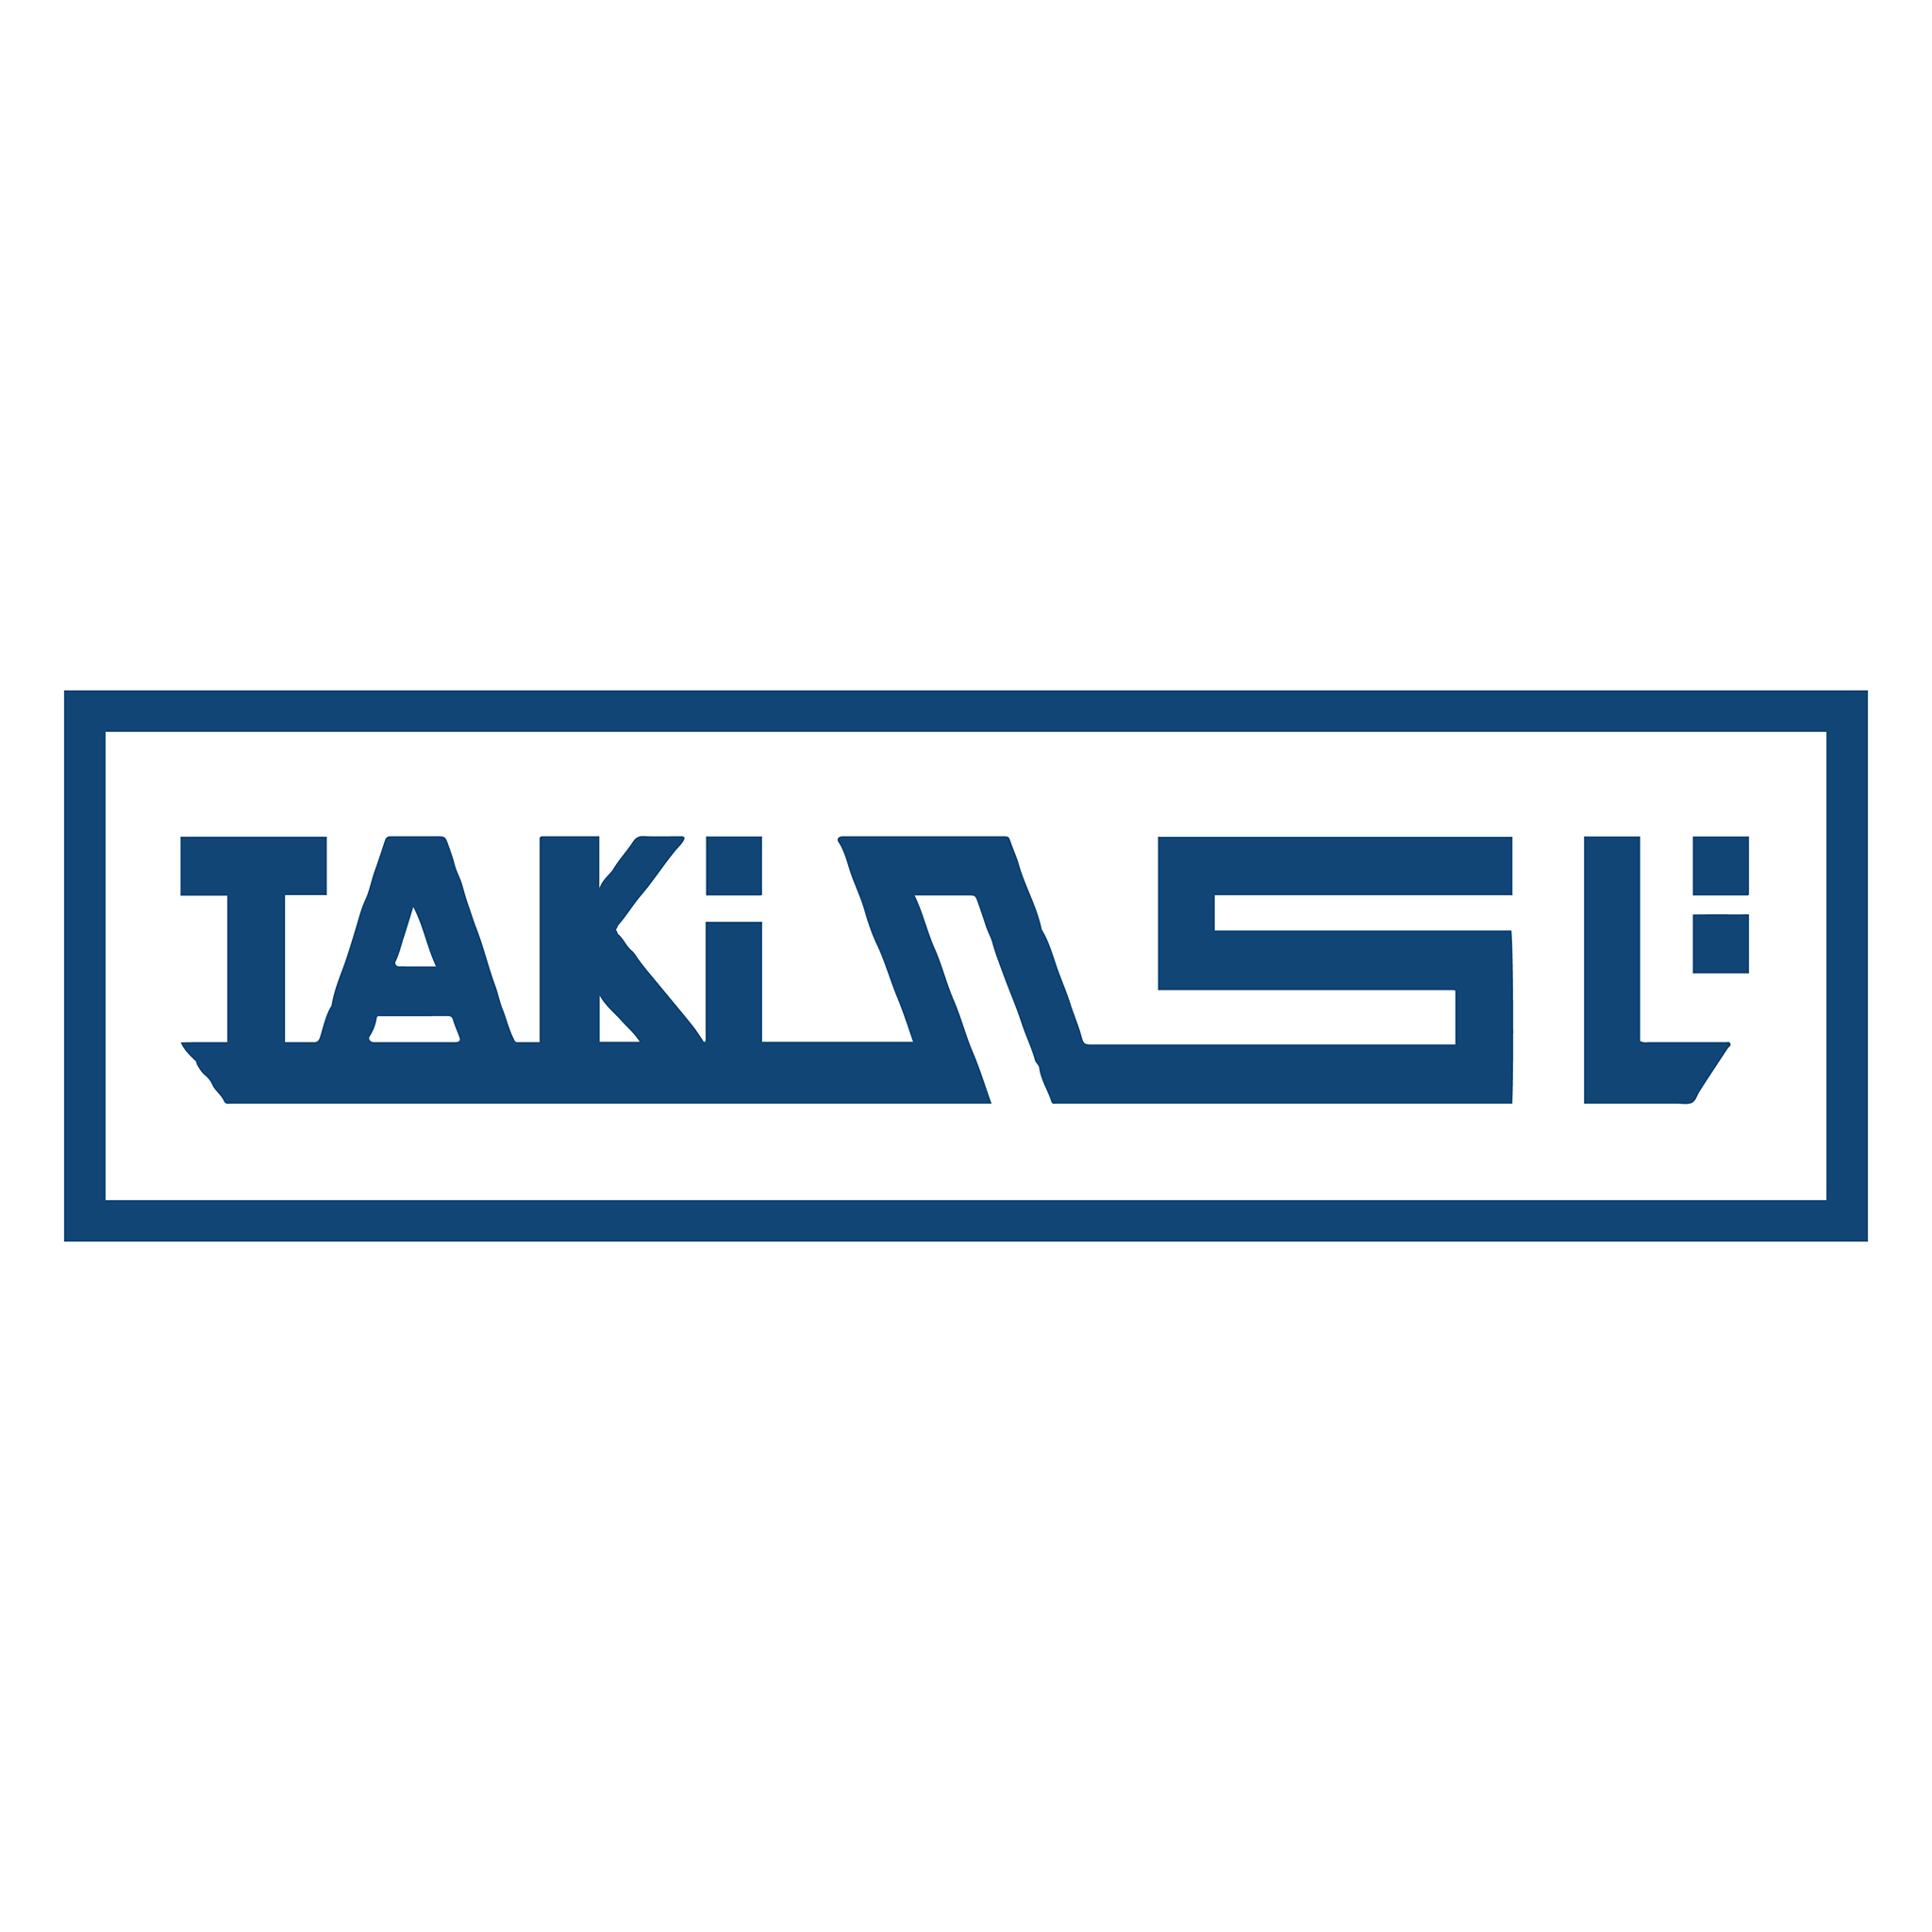 شركة تاكي لتصنيع المراتب و الموبيليات